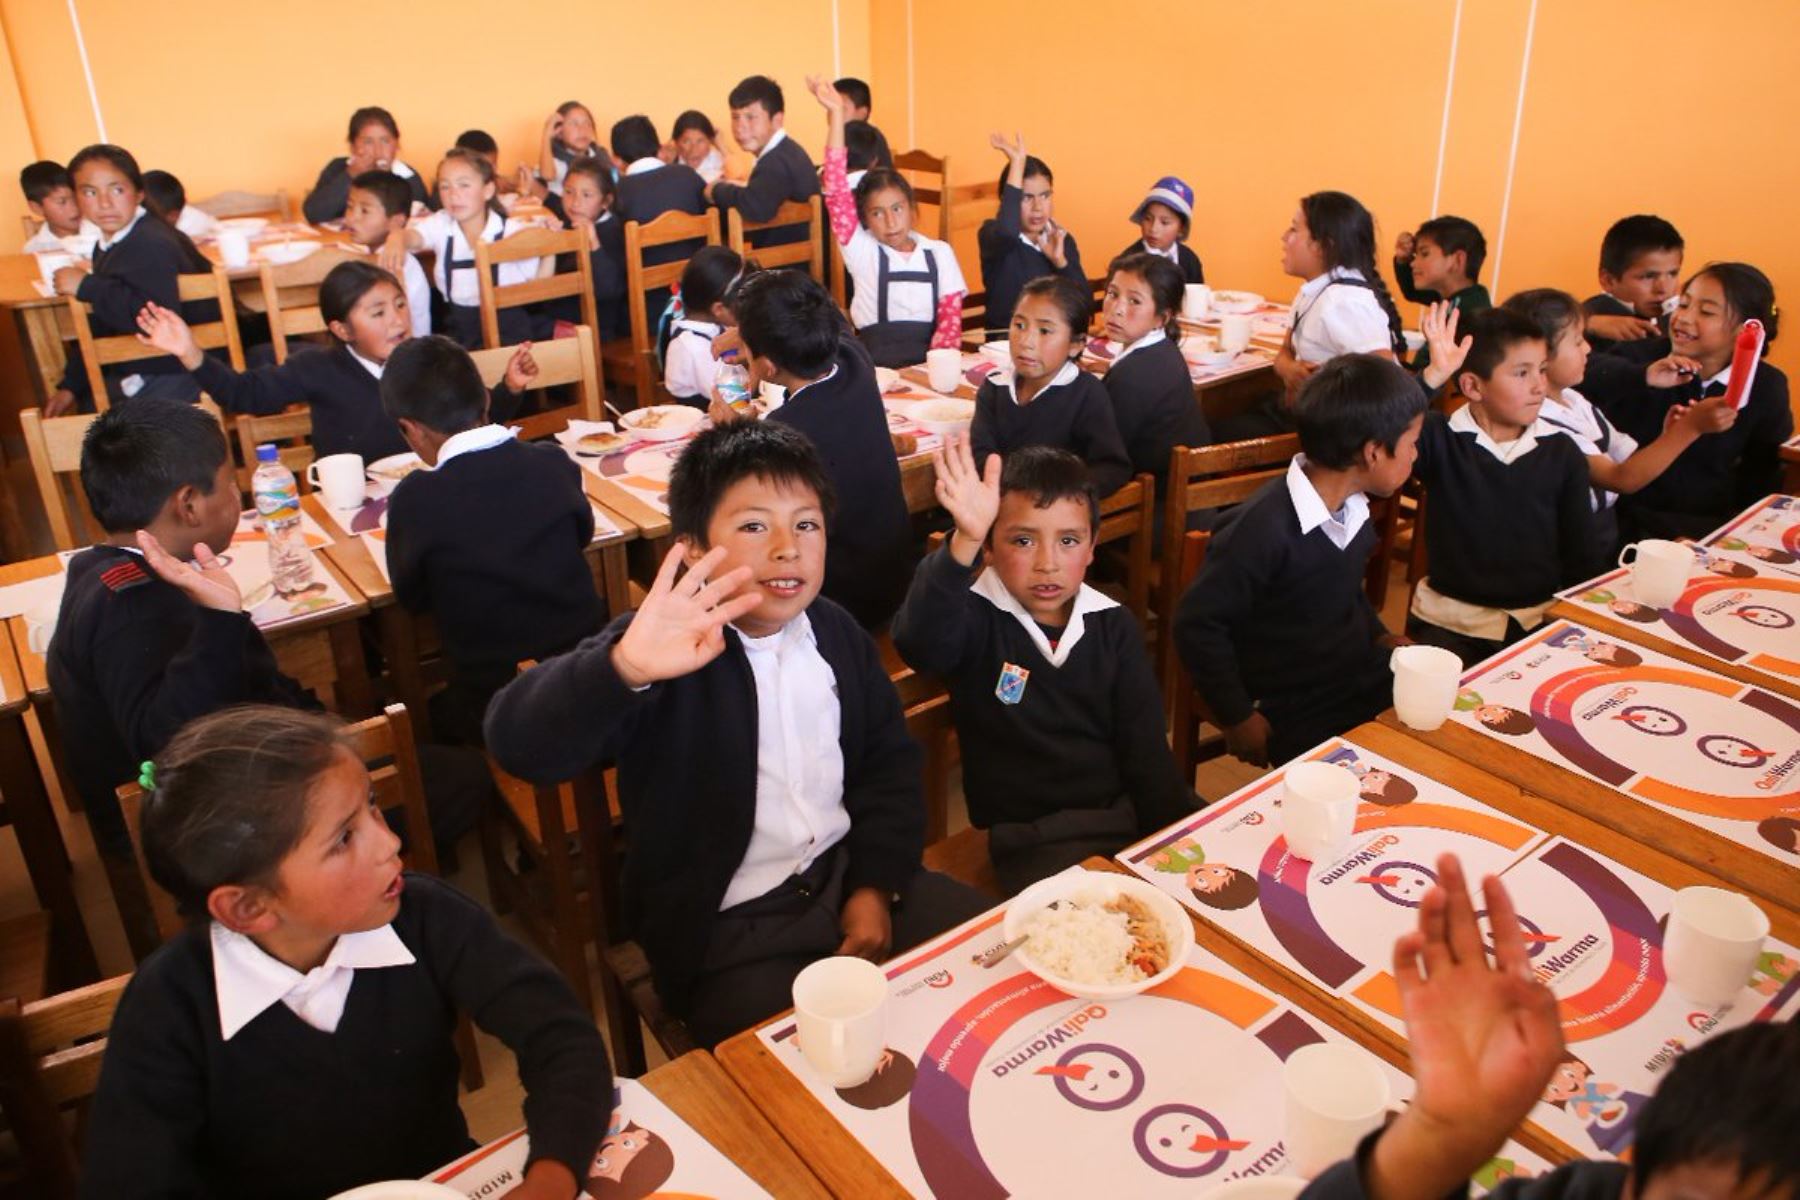 Midis evaluará impacto de desayunos escolares distribuidos por Qali Warma. ANDINA/Difusión